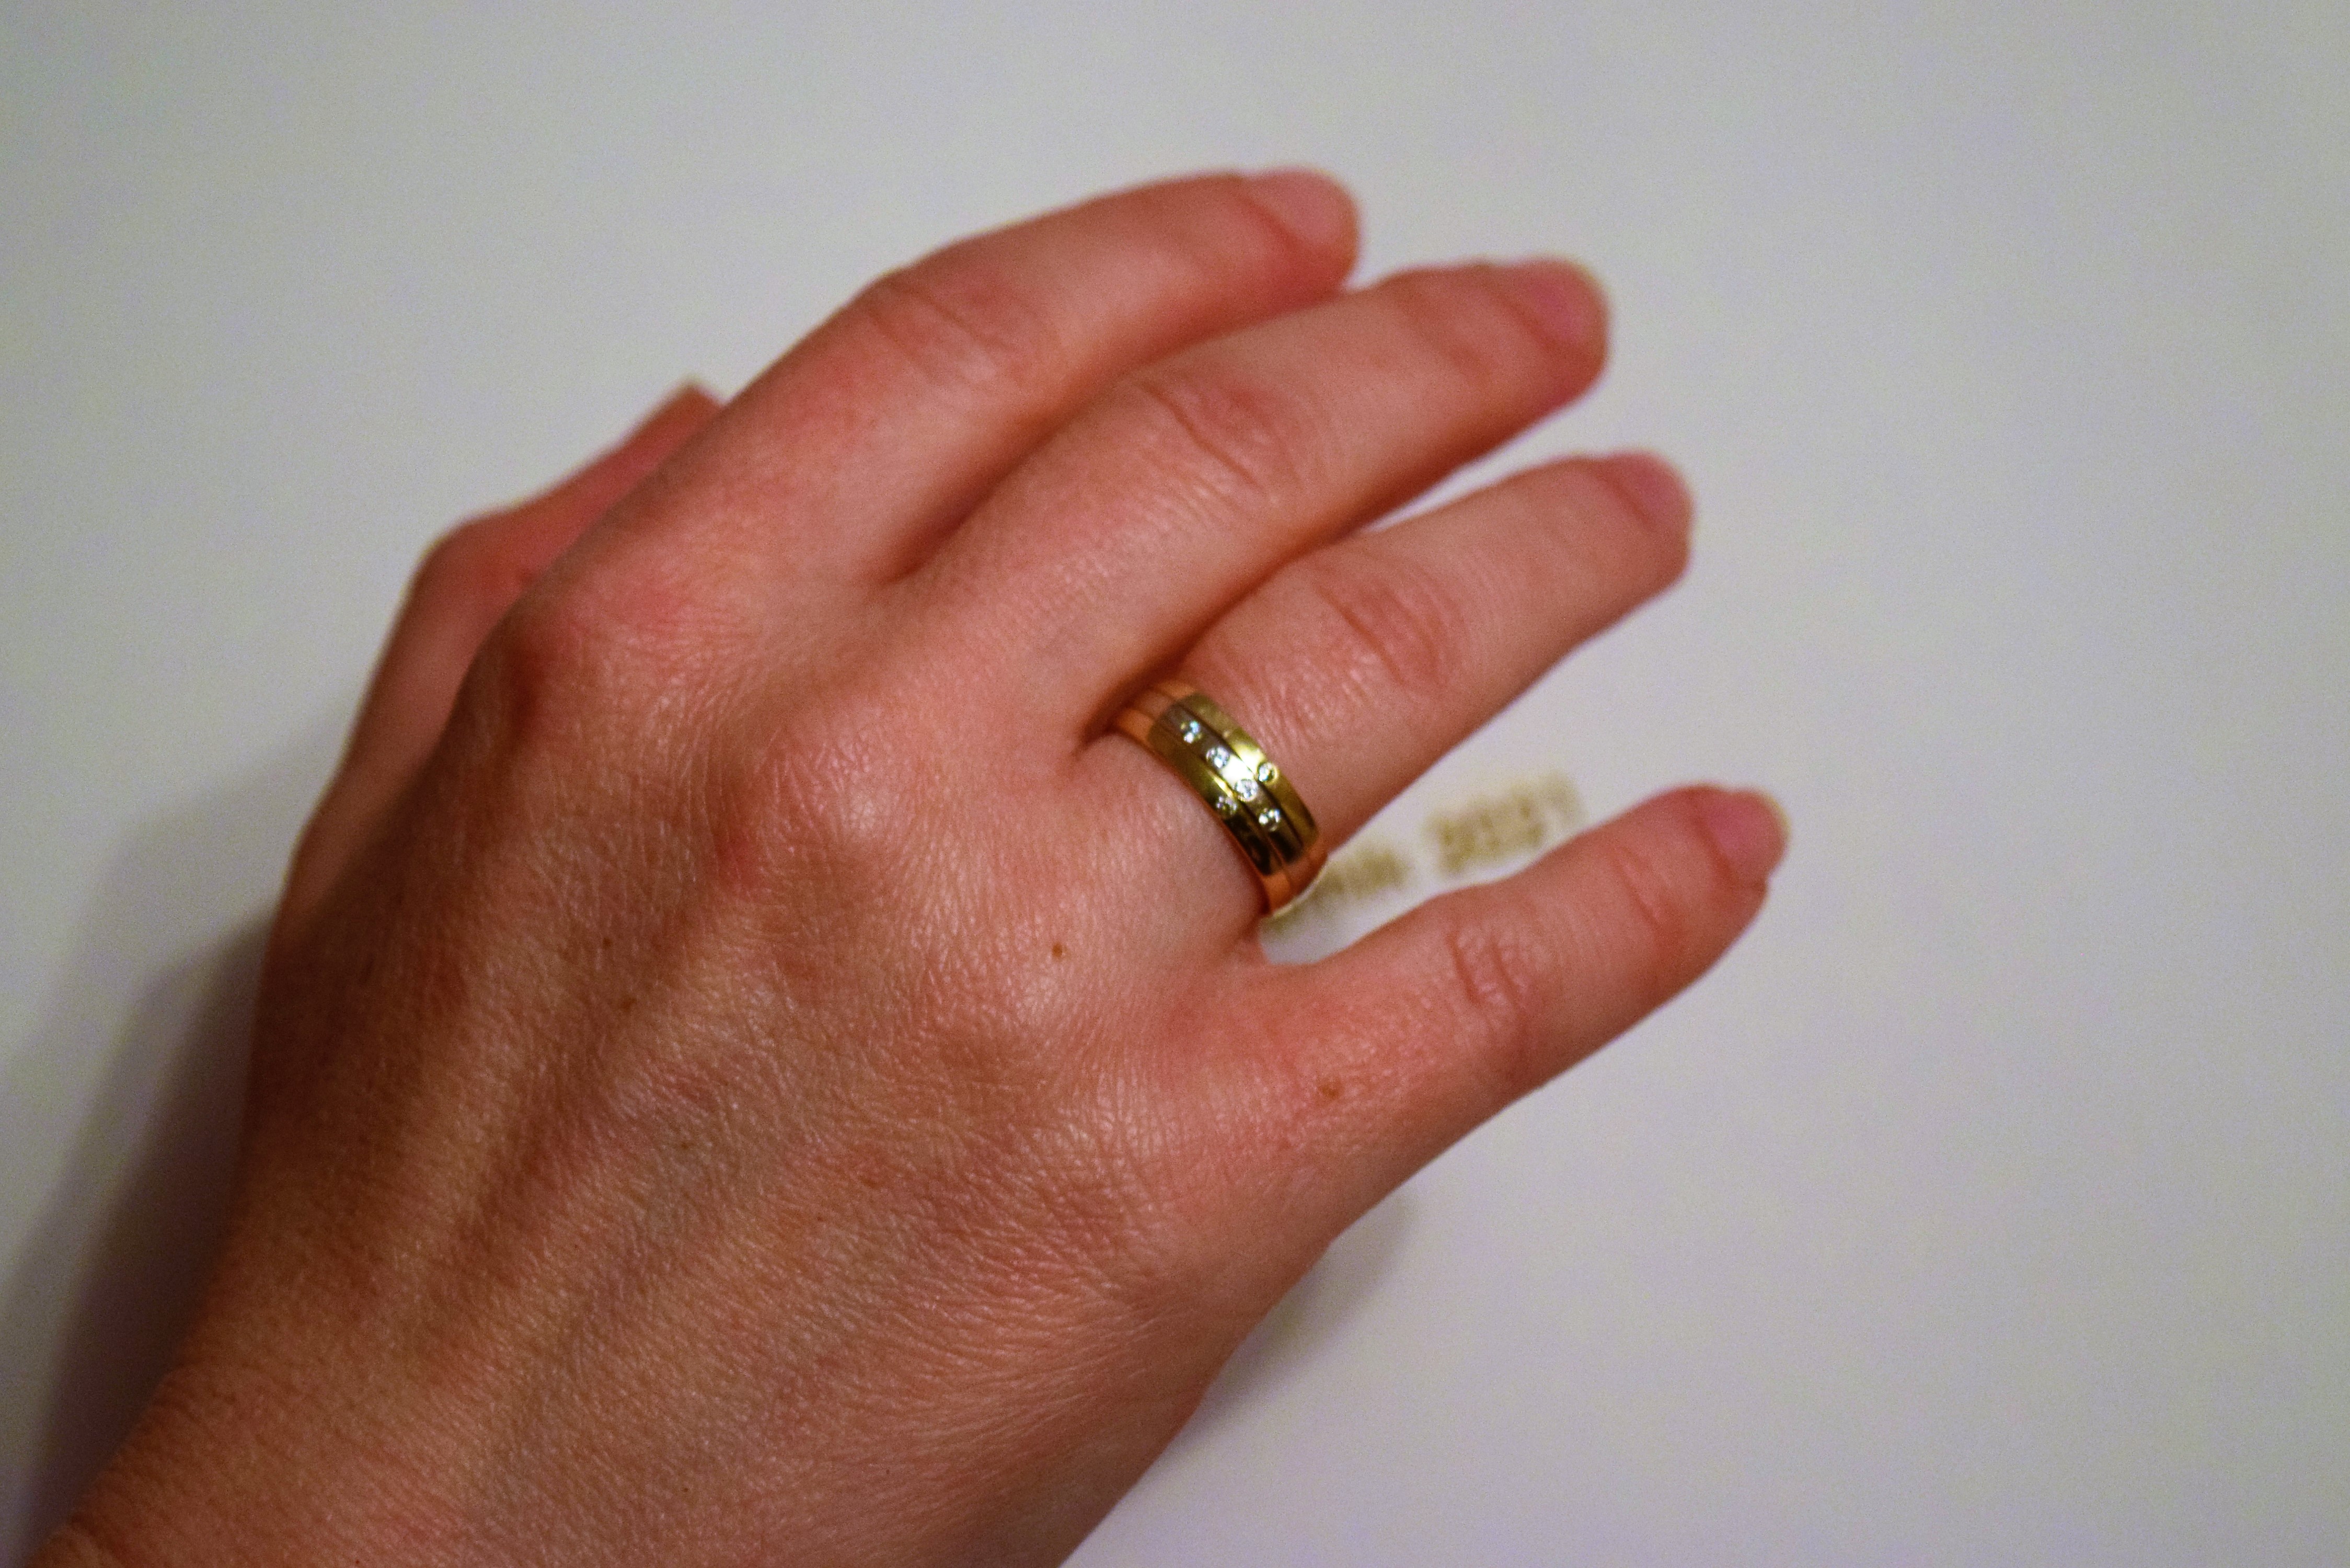 Widoczną oznaką zaślubin jest obrączka, noszona na serdecznym palcu prawej ręki